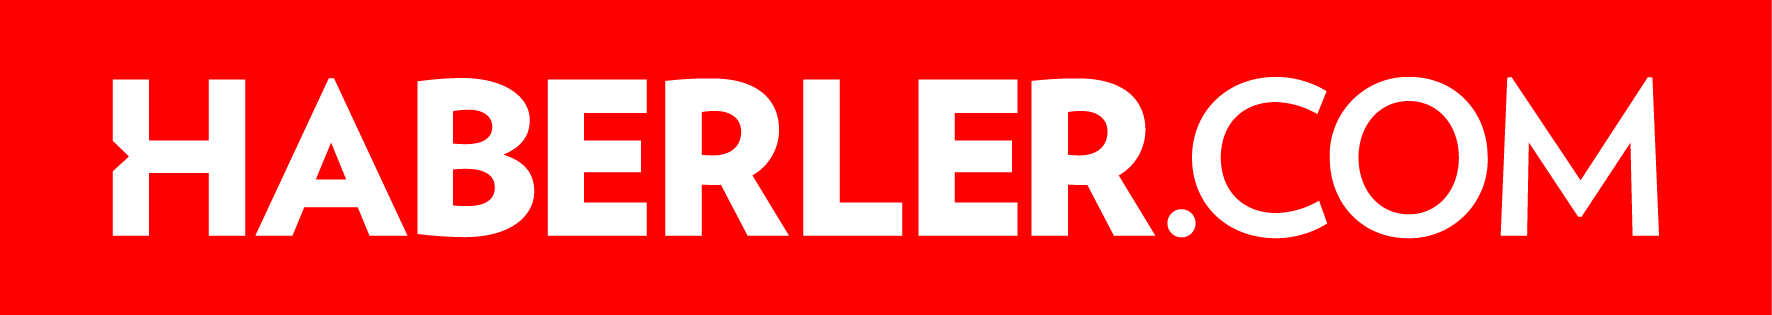 Haberler.com Logo png